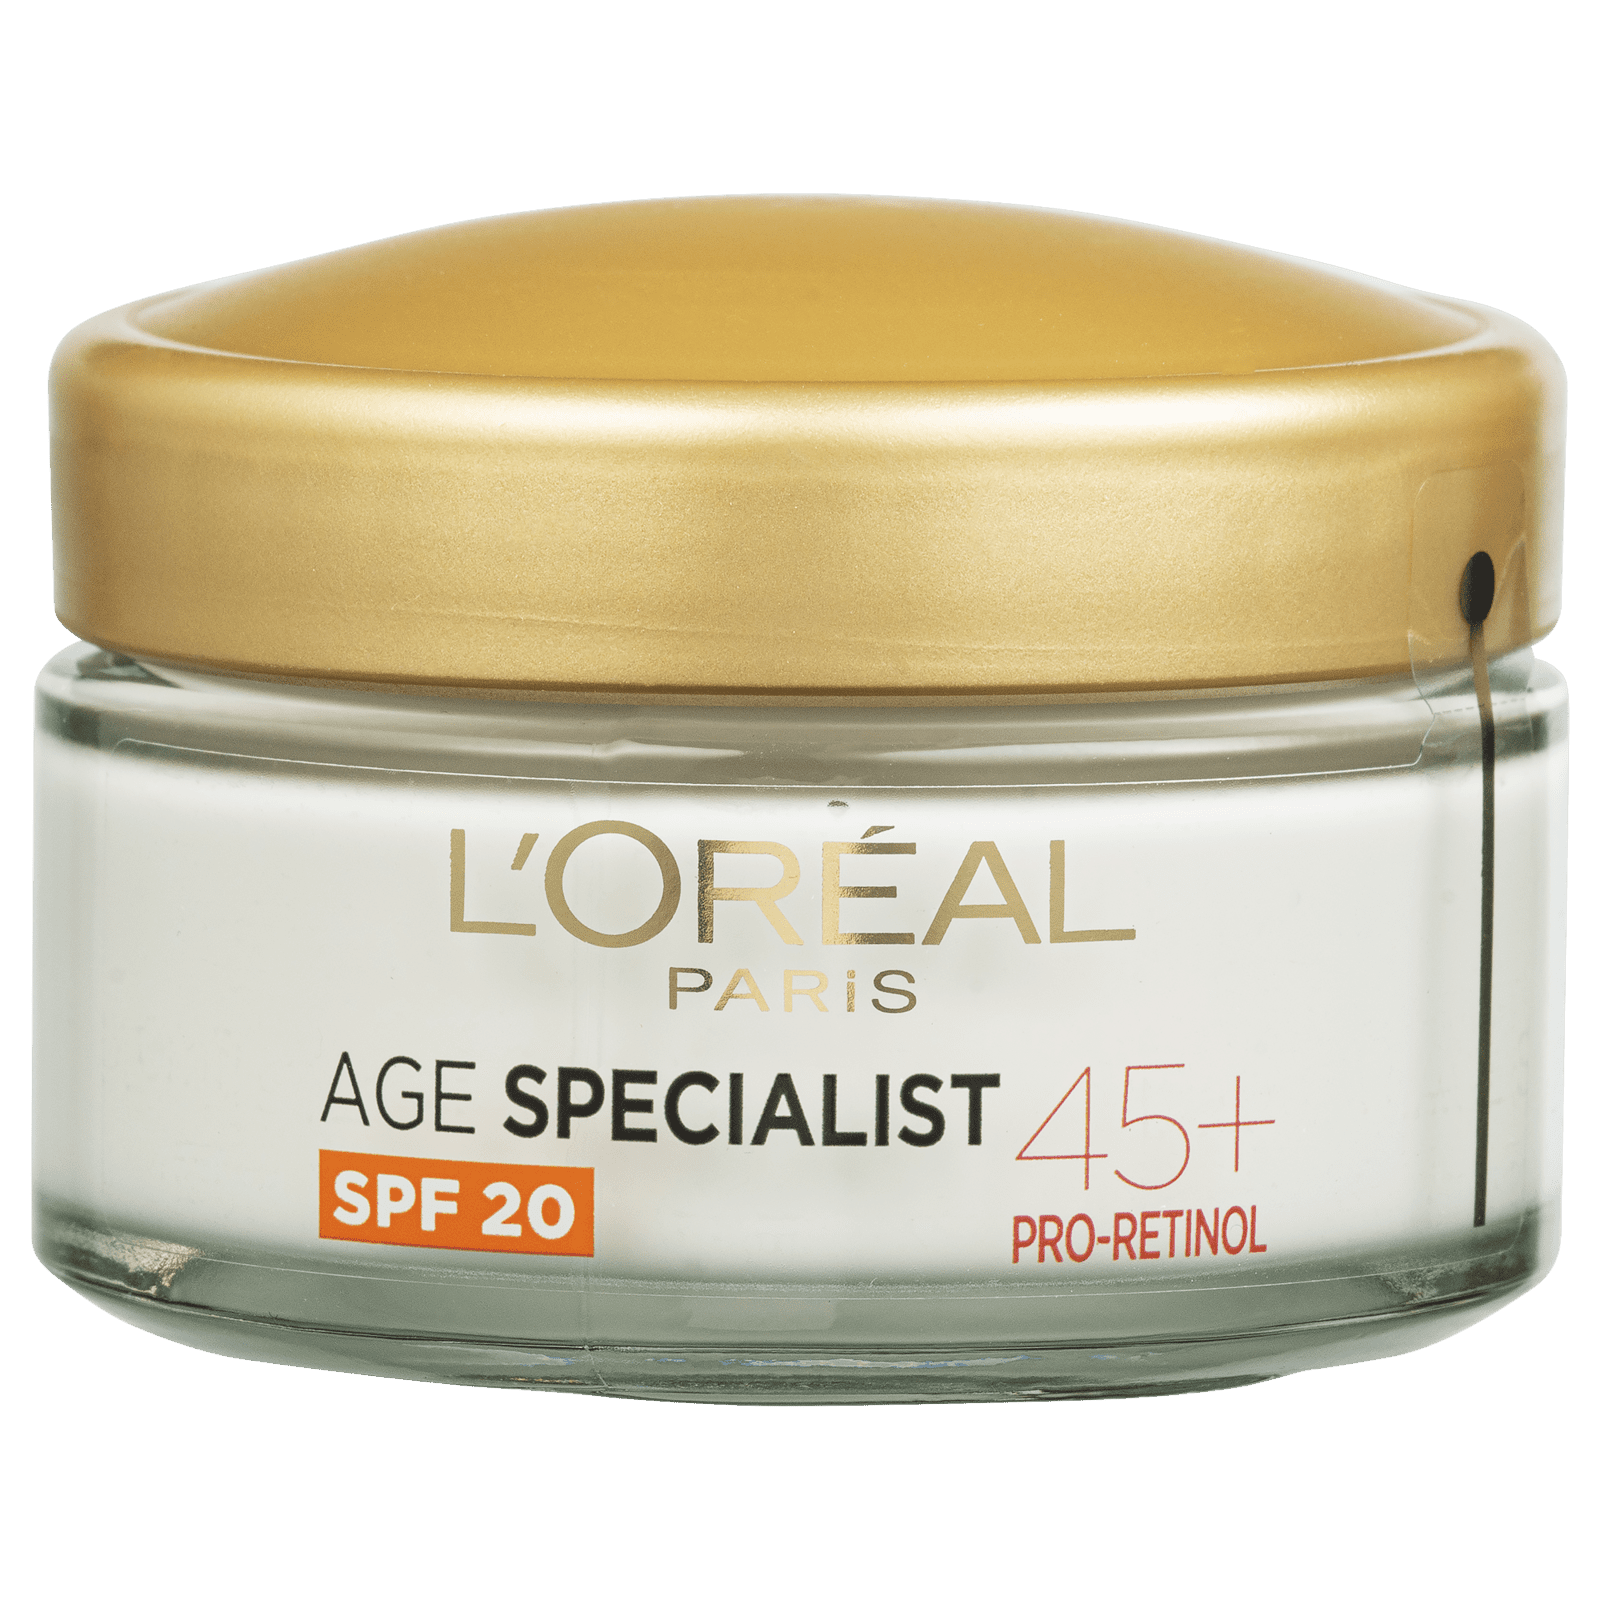 L'Oréal Paris Age Specialist 45+ denní krém, 50 ml